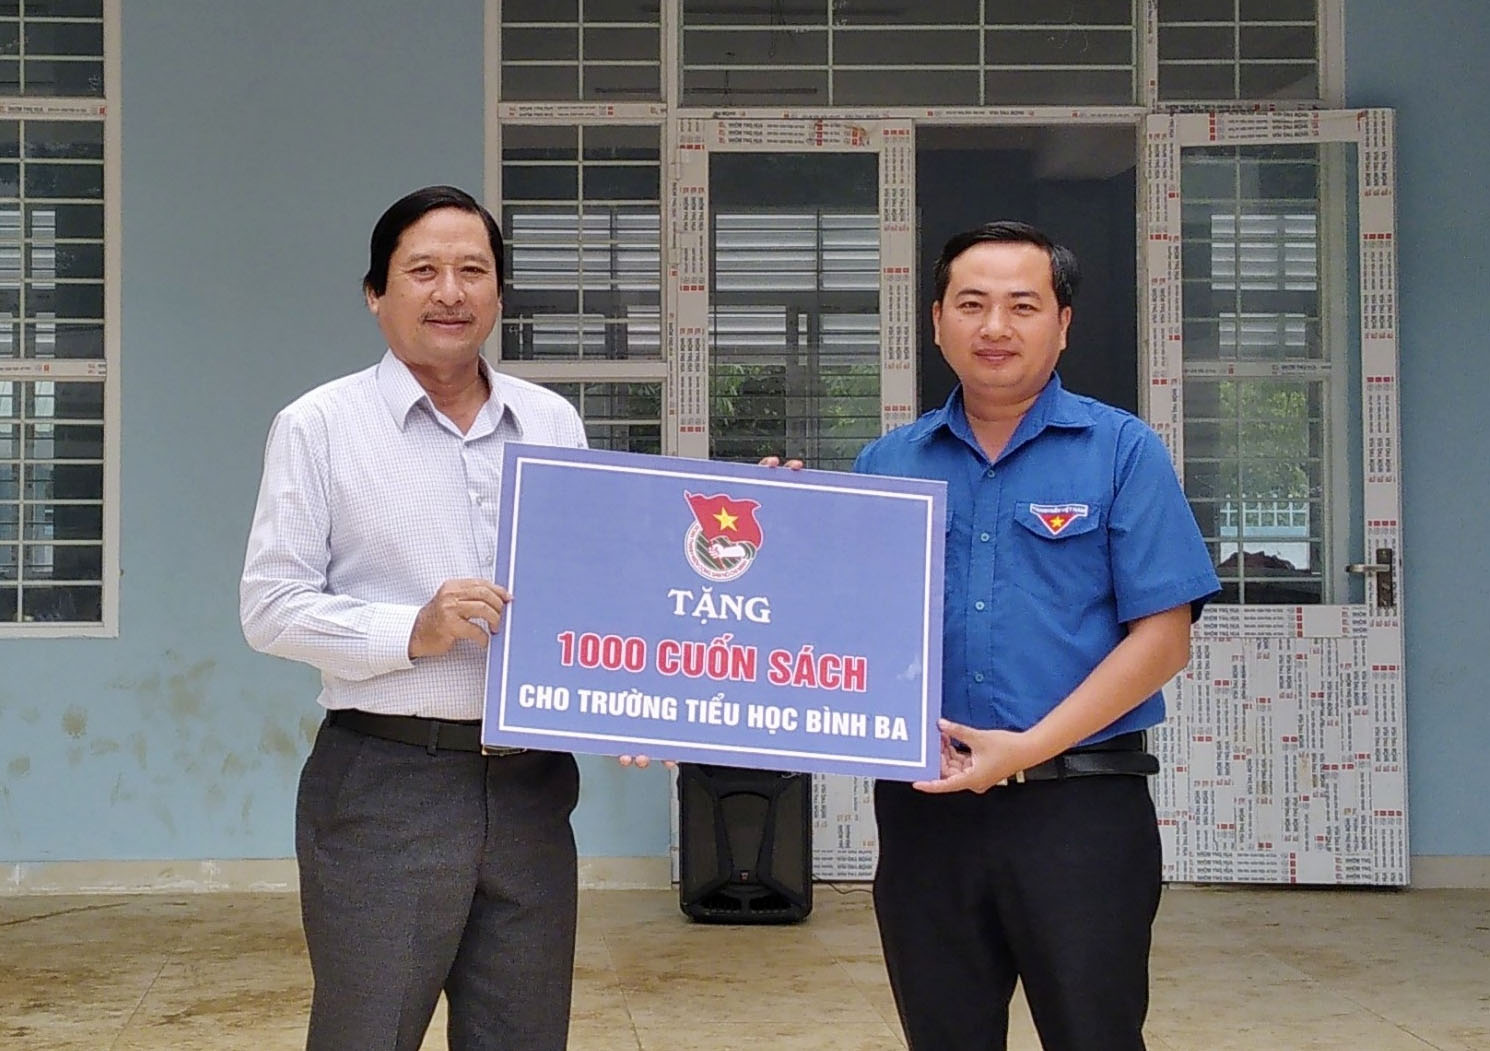 Anh Nguyễn Trung Minh, Bí thư Huyện Đoàn Châu Đức  trao bảng tượng trưng 1.000 cuốn sách cho thầy Nguyễn Khương, Hiệu trưởng trường TH Bình Ba.